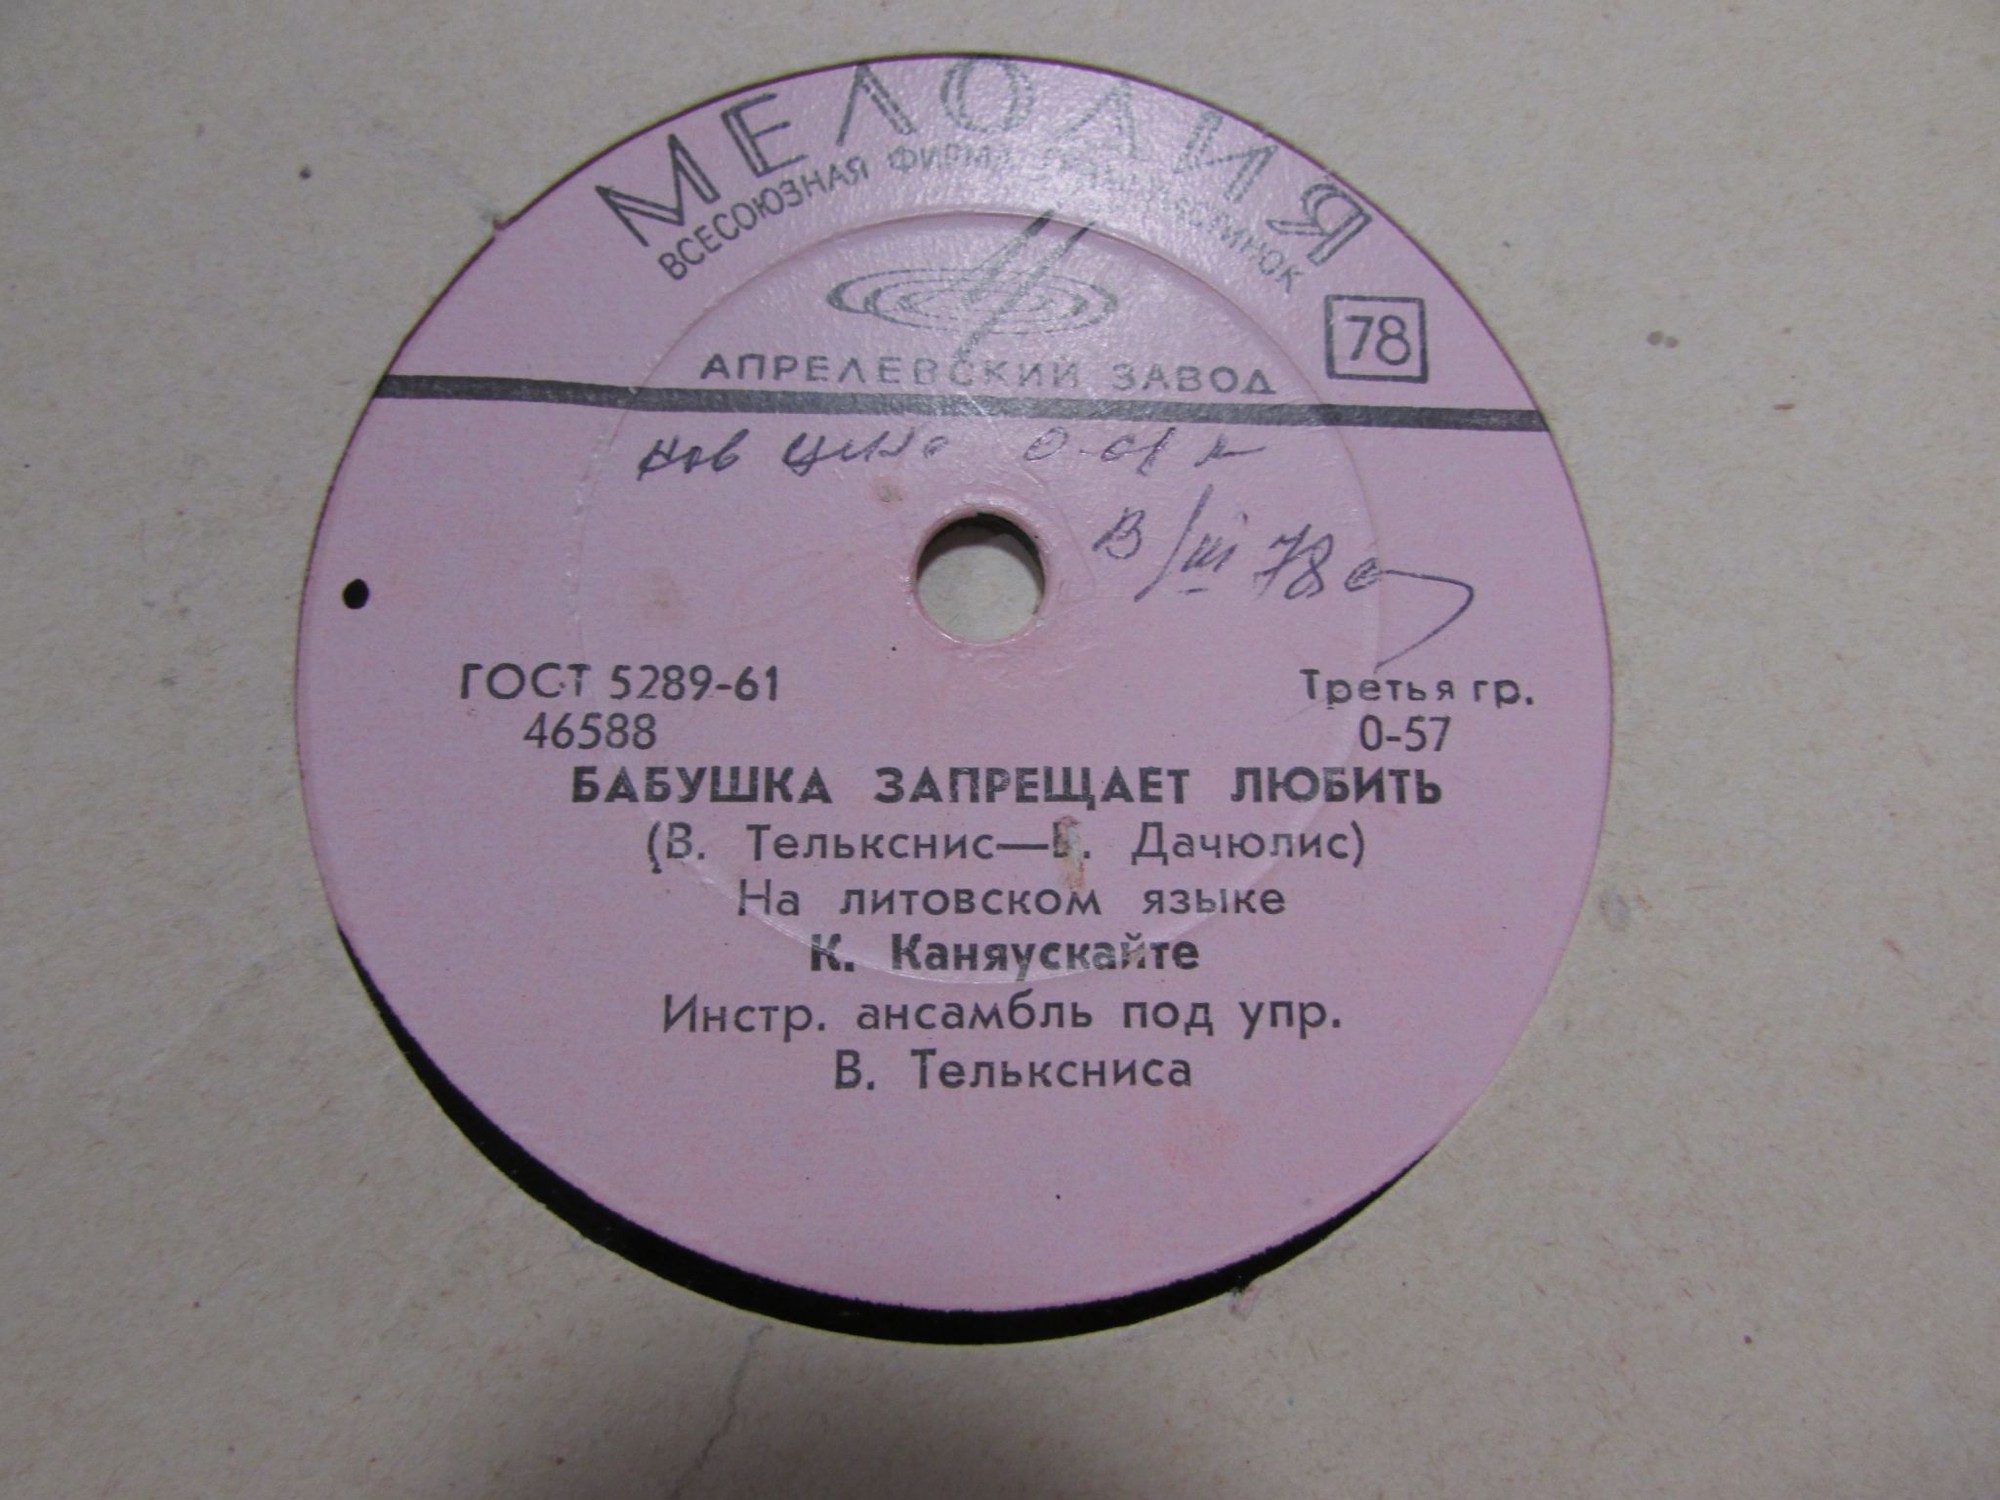 Džiaz-kvintetas, Vad. O. Molokojedovo -– Bossa-Nova / H. Kaniauskaitė — Senelė Mylėti Neleidžia